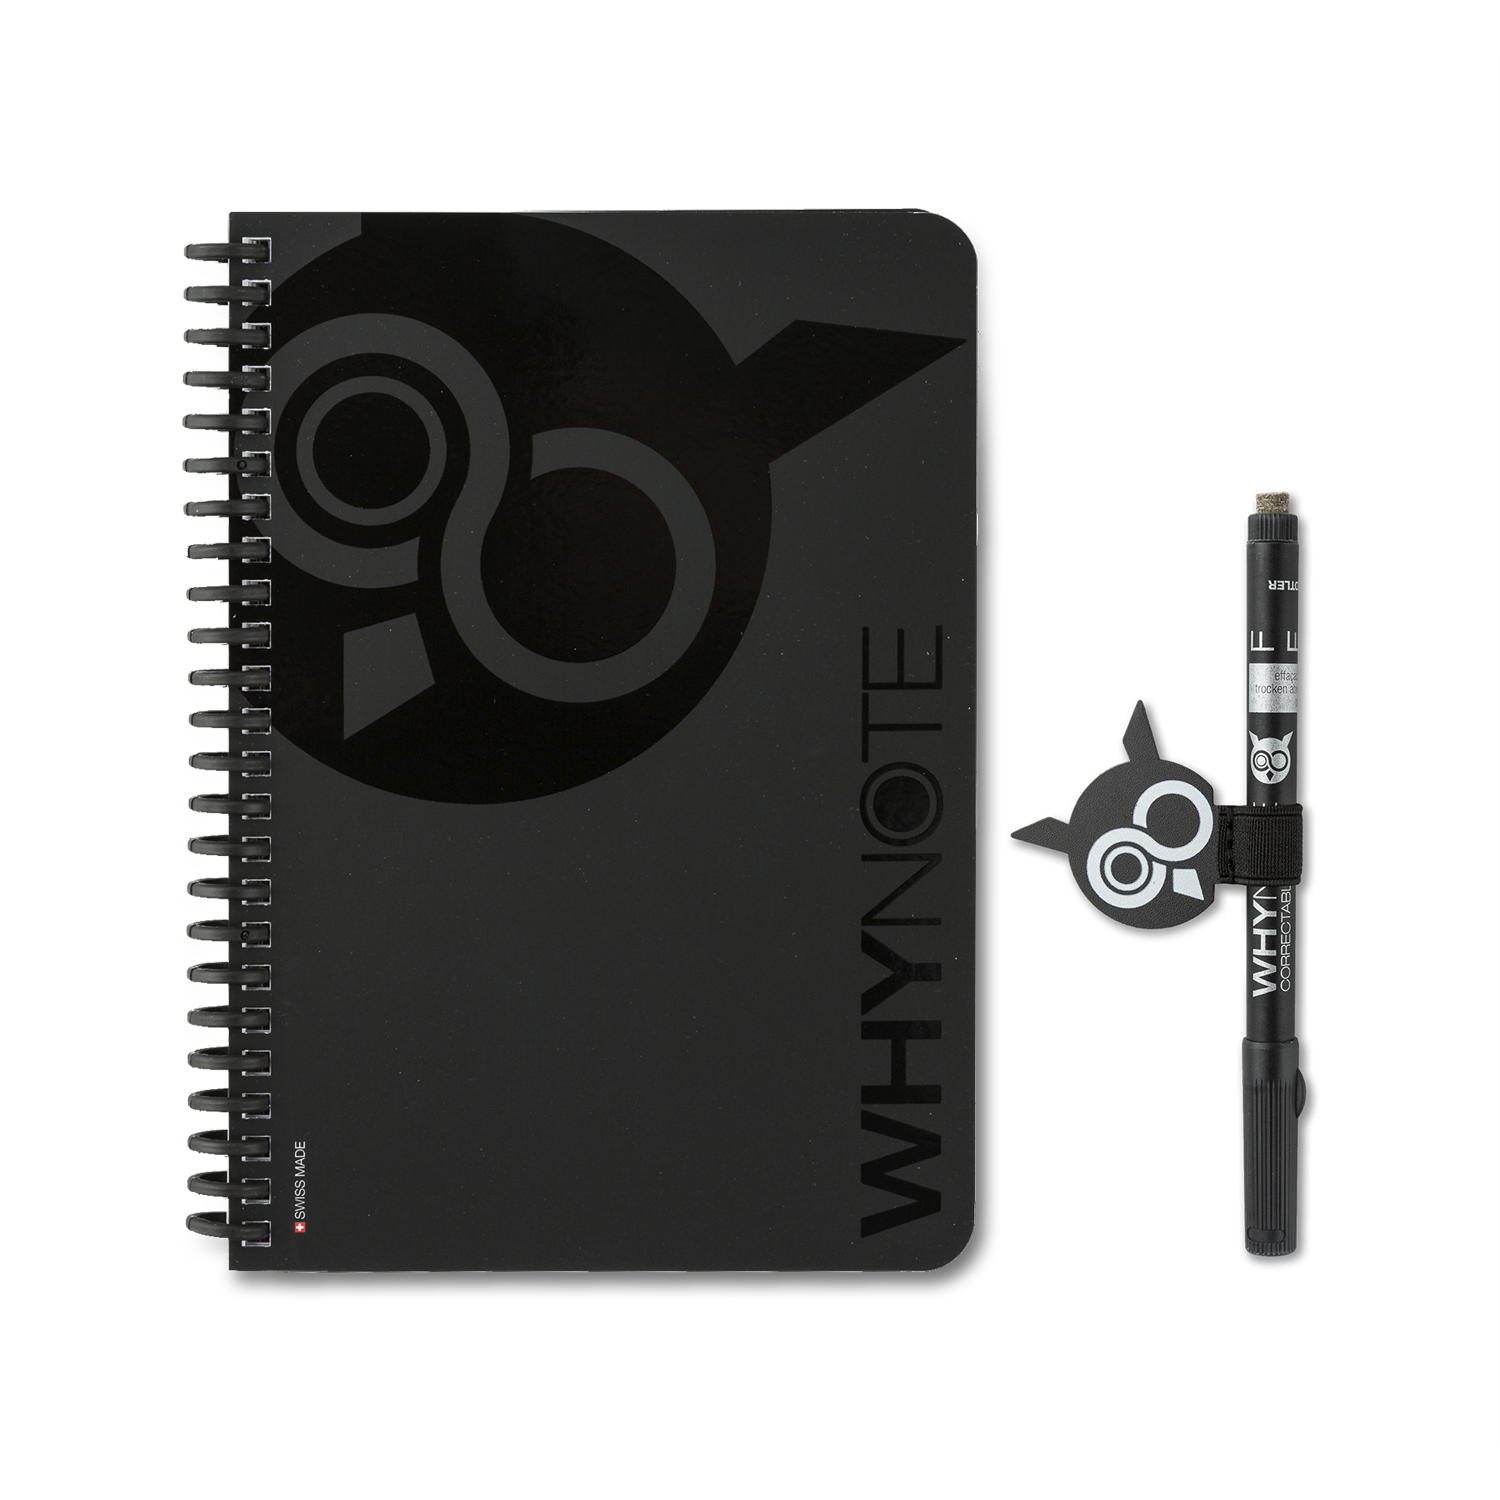 瑞士原产WHYNOTE可擦除A5笔记本可重复使用笔记本套装 黑色